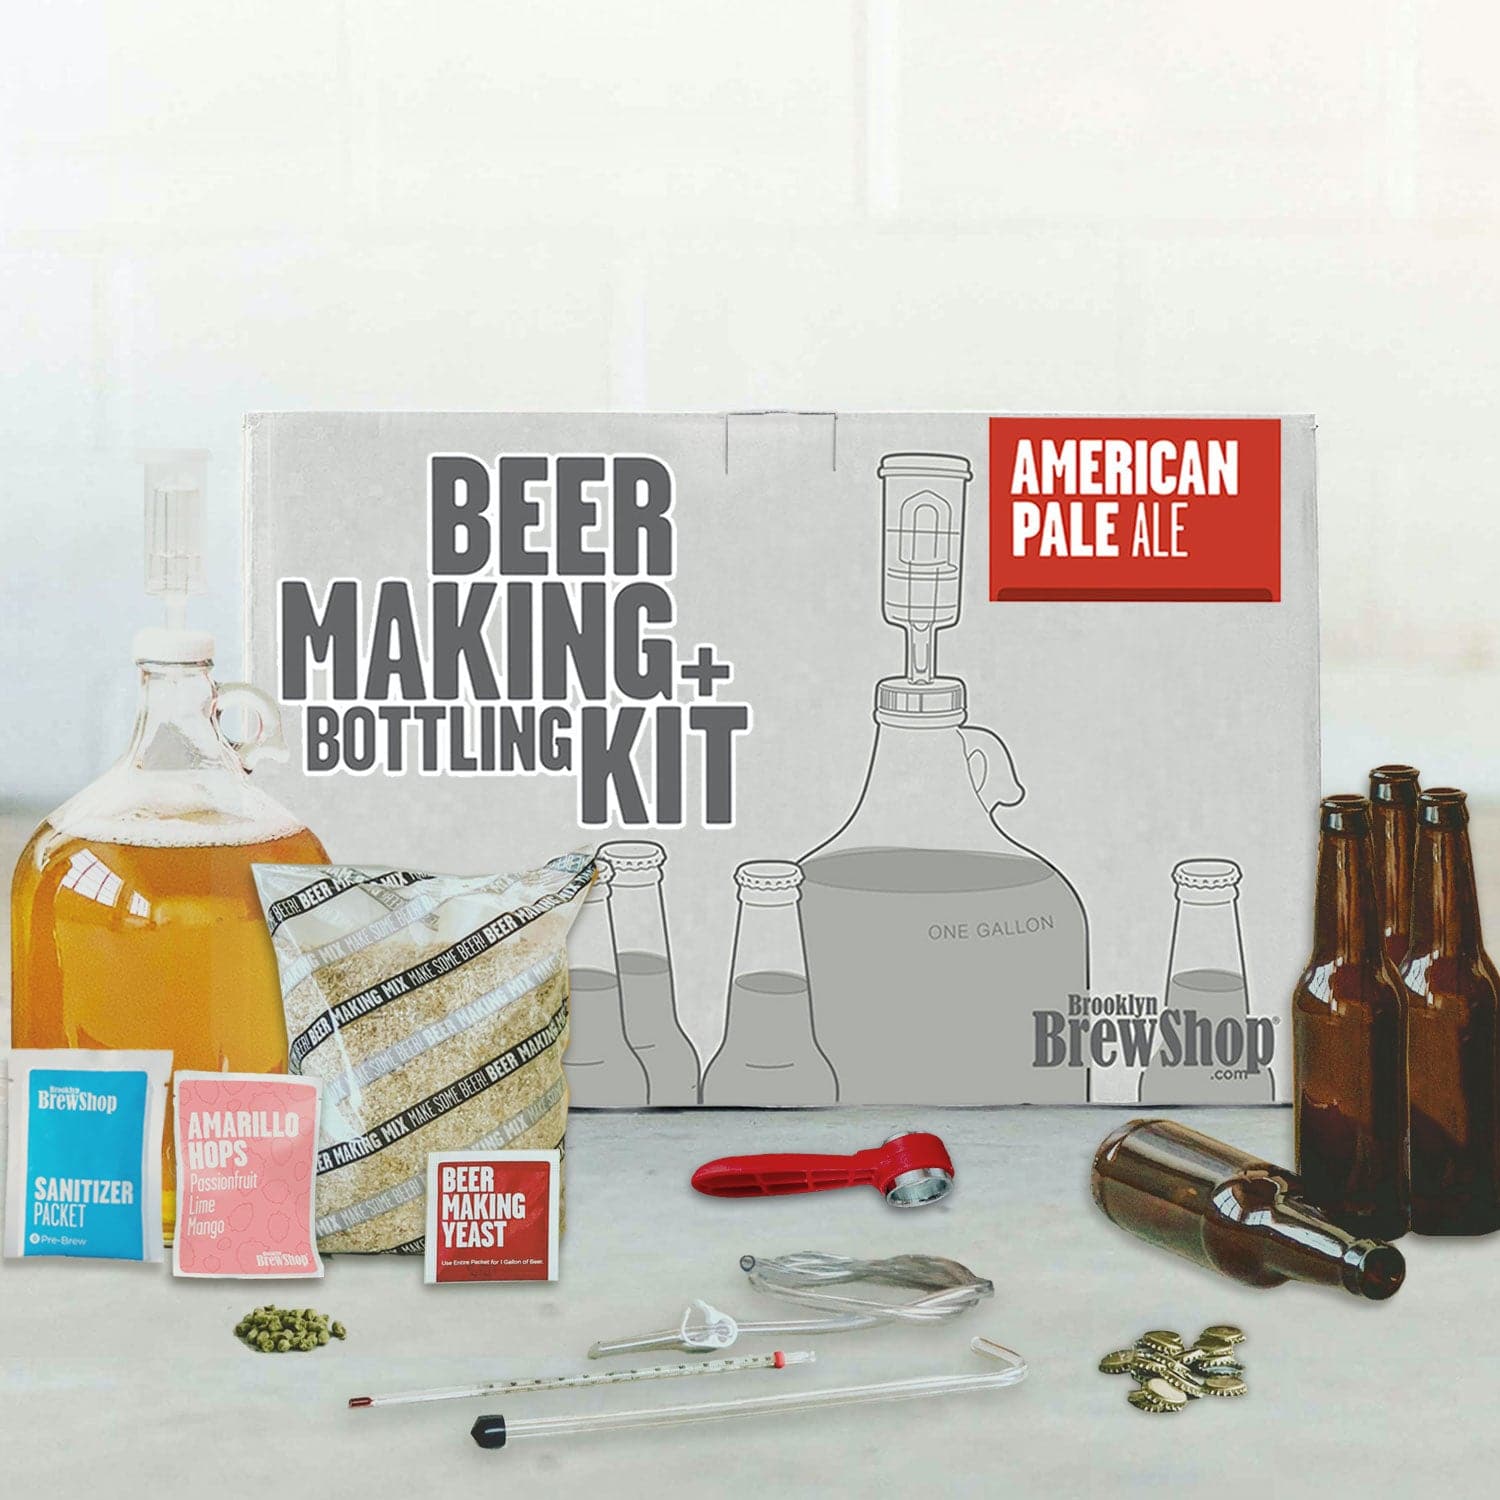 Beer Making + Bottling Kit: American Pale Ale - Brooklyn Brew Shop